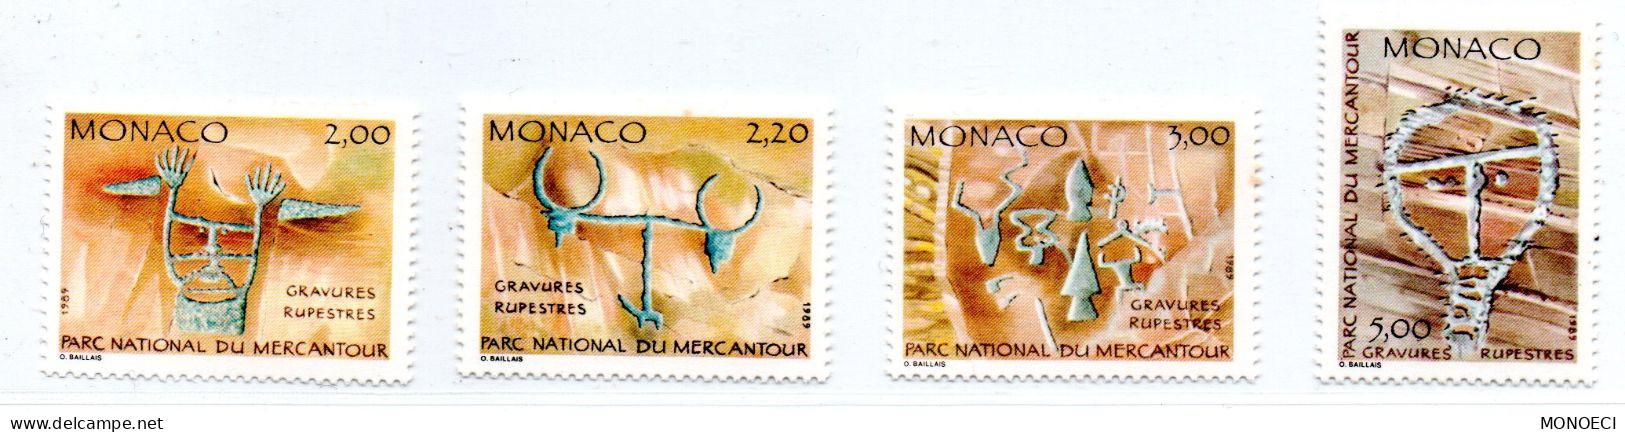 MONACO -- 4 Timbres  -- Parc Du Mercantour -- Gravures Rupestres - Unused Stamps